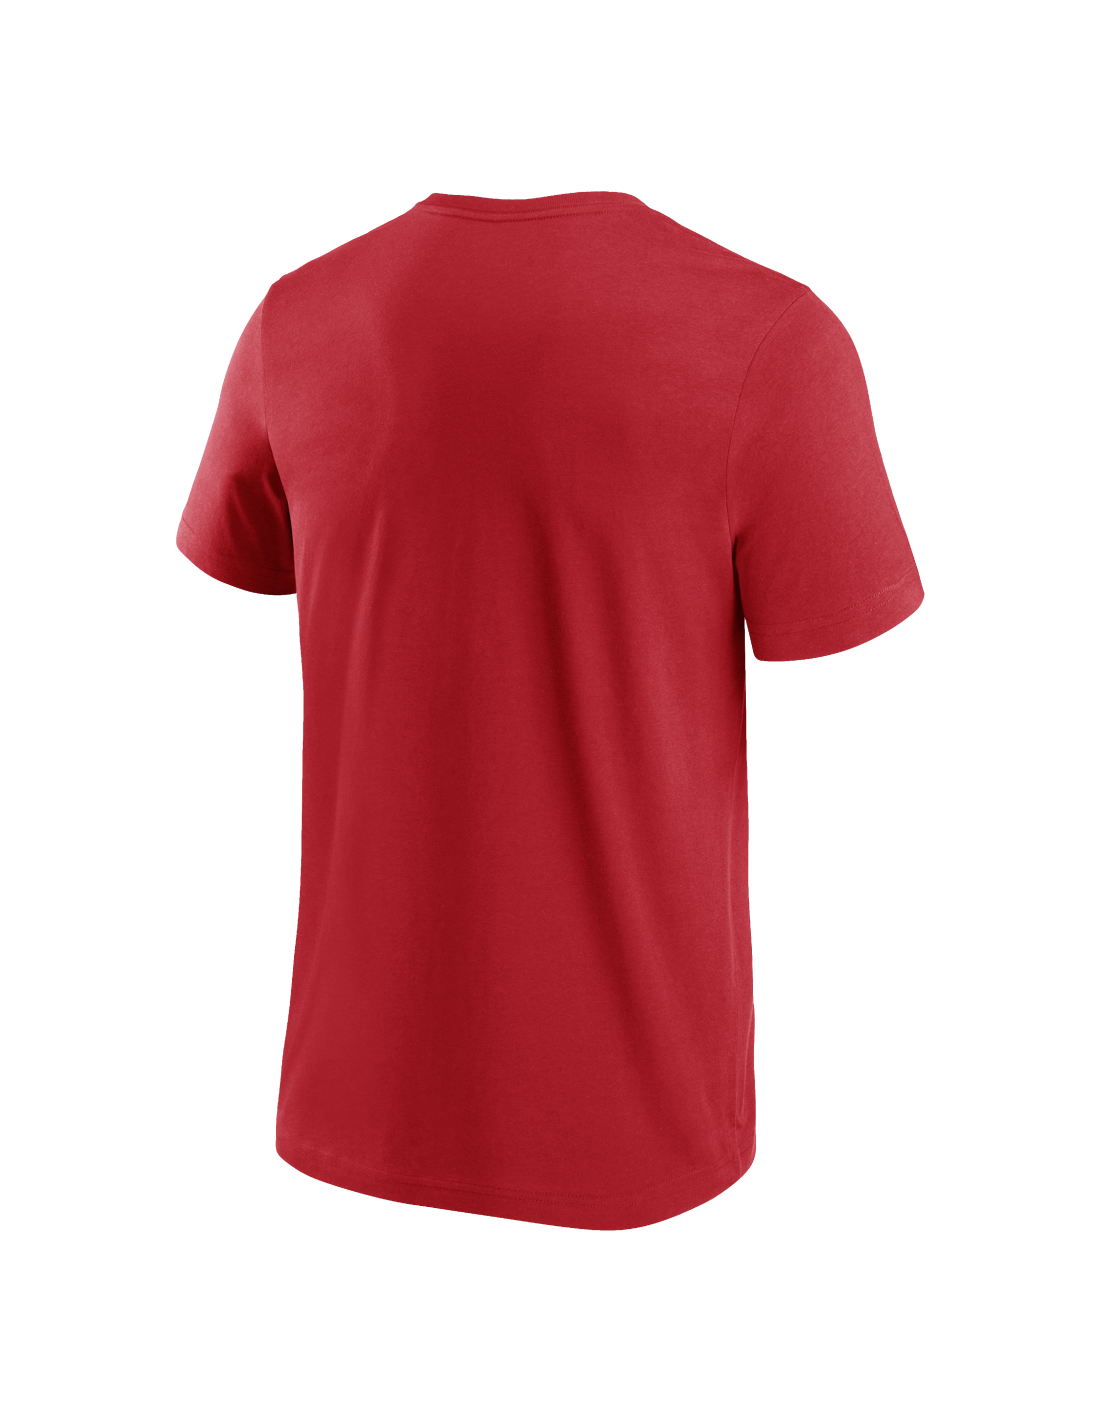 Kansas City Chiefs Team Arch T-Shirt